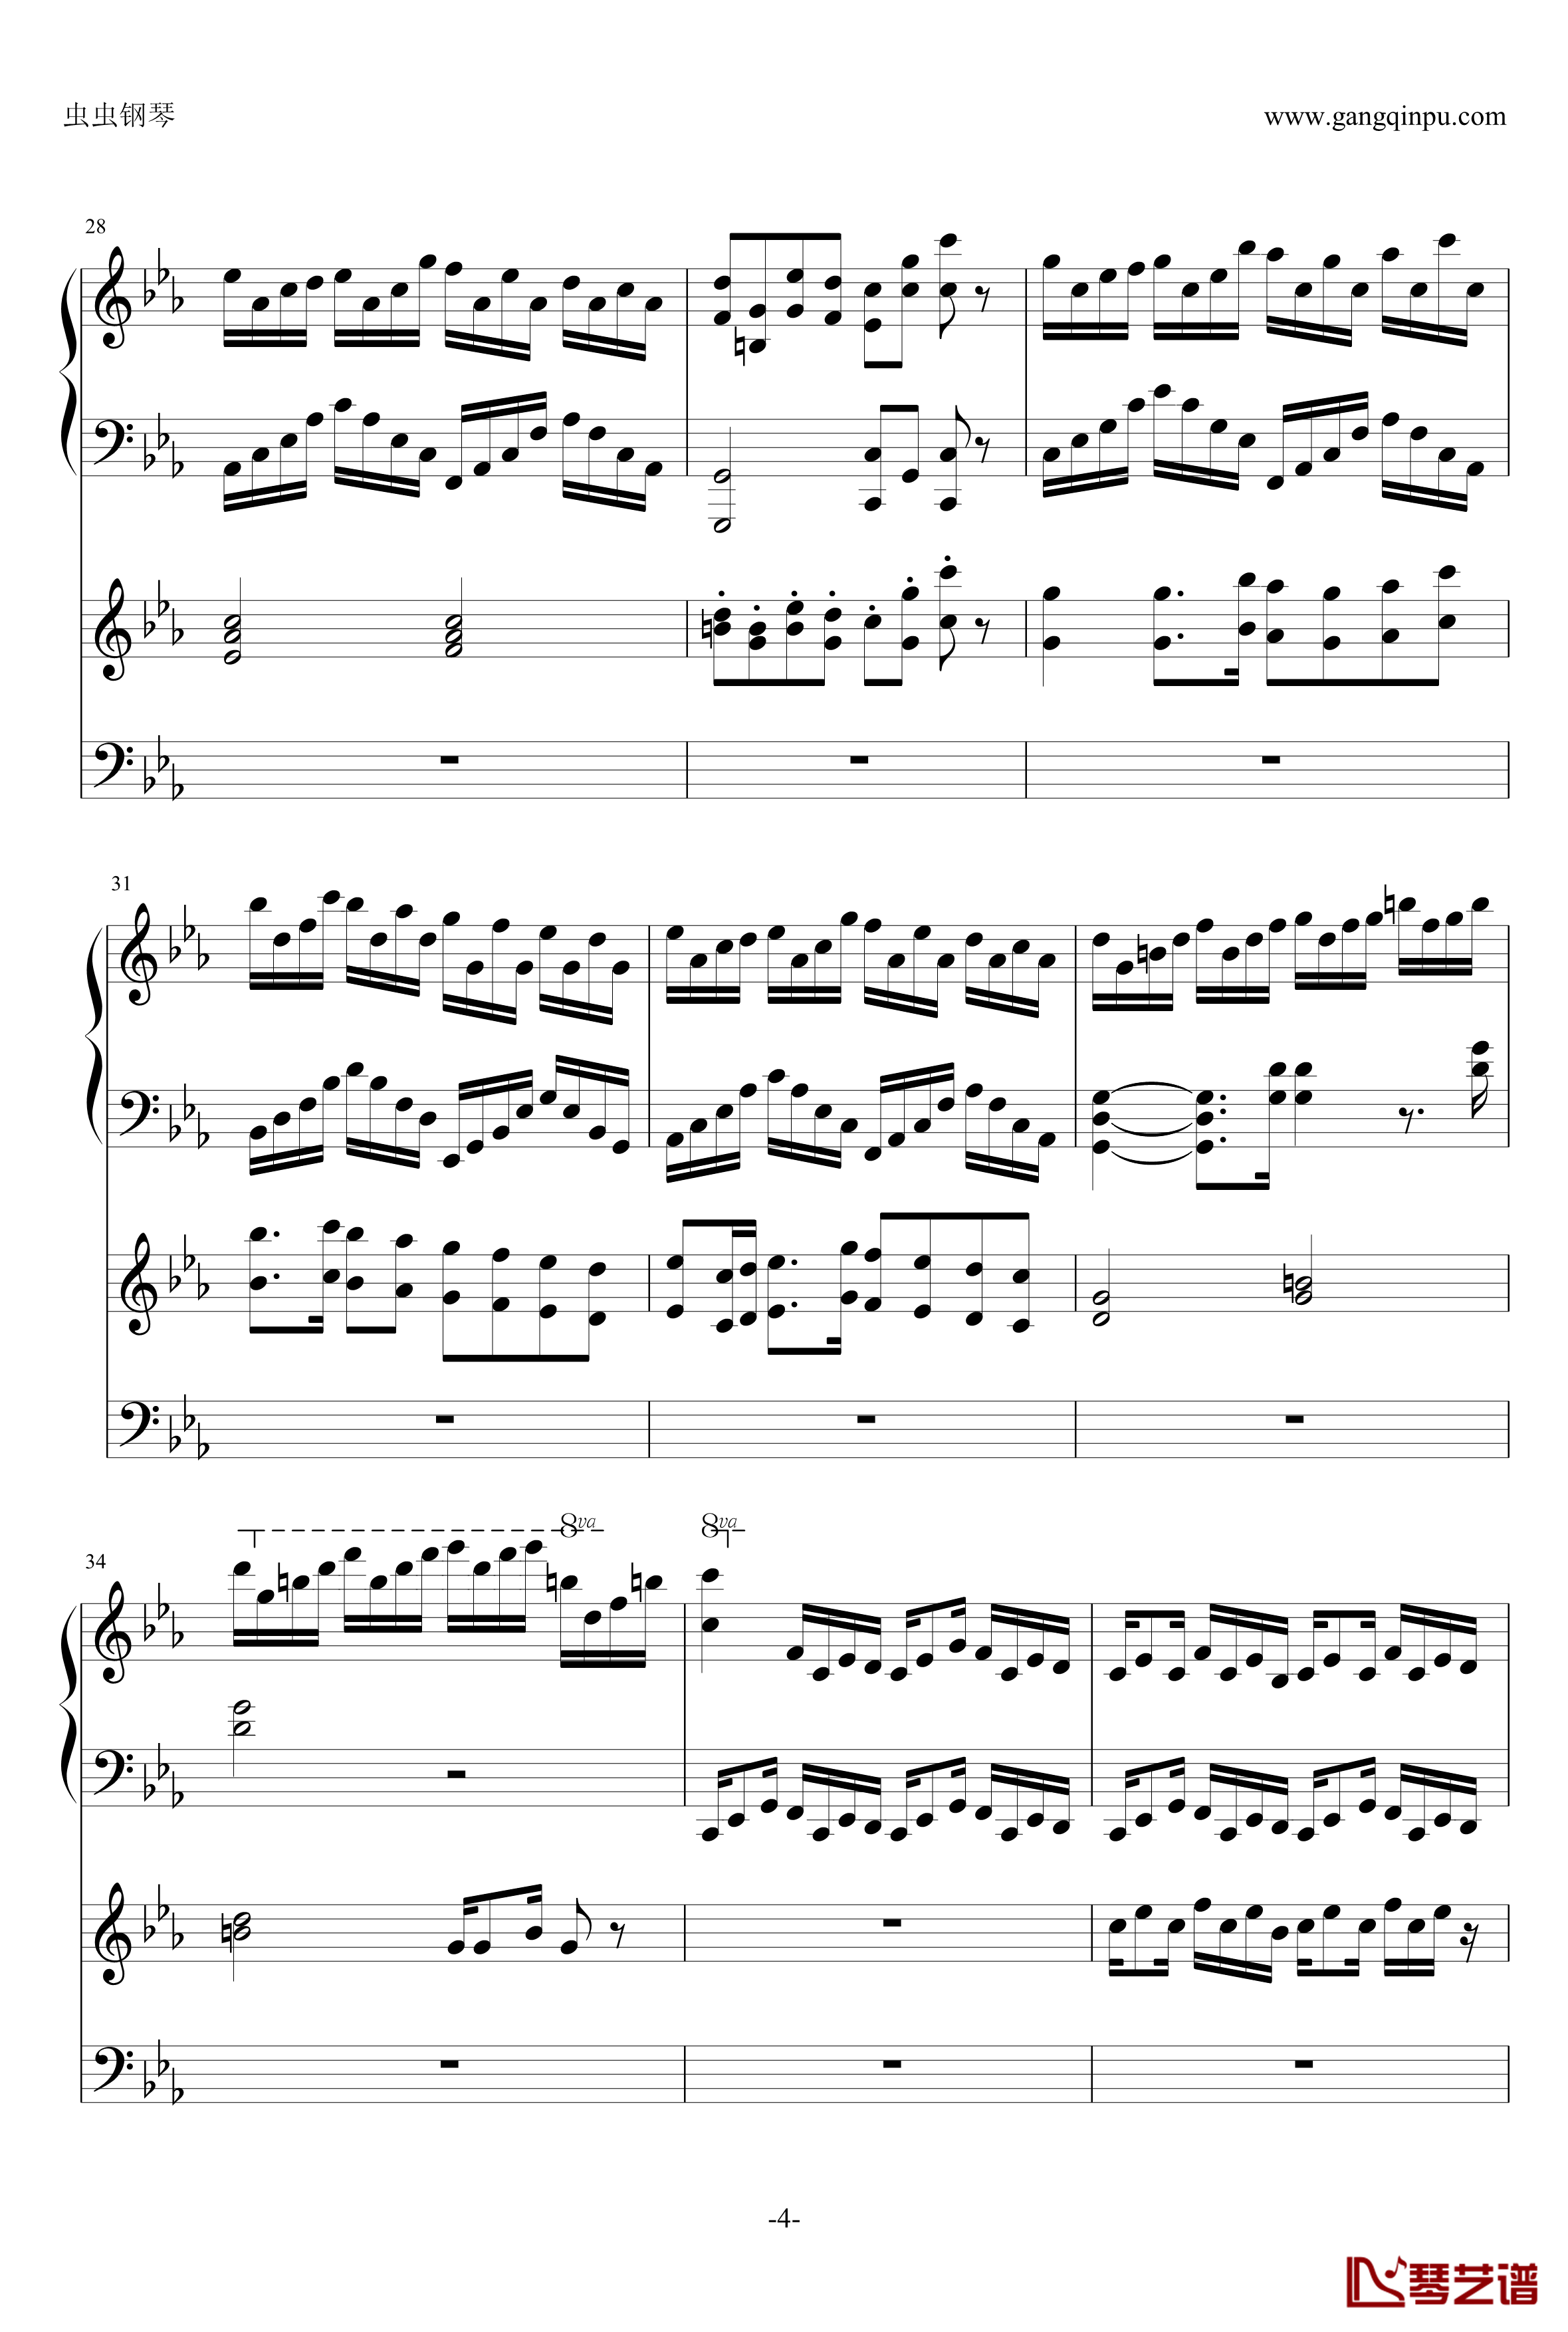 克罗地亚狂想曲钢琴谱-钢琴电子琴无和弦合奏-马克西姆-Maksim·Mrvica4